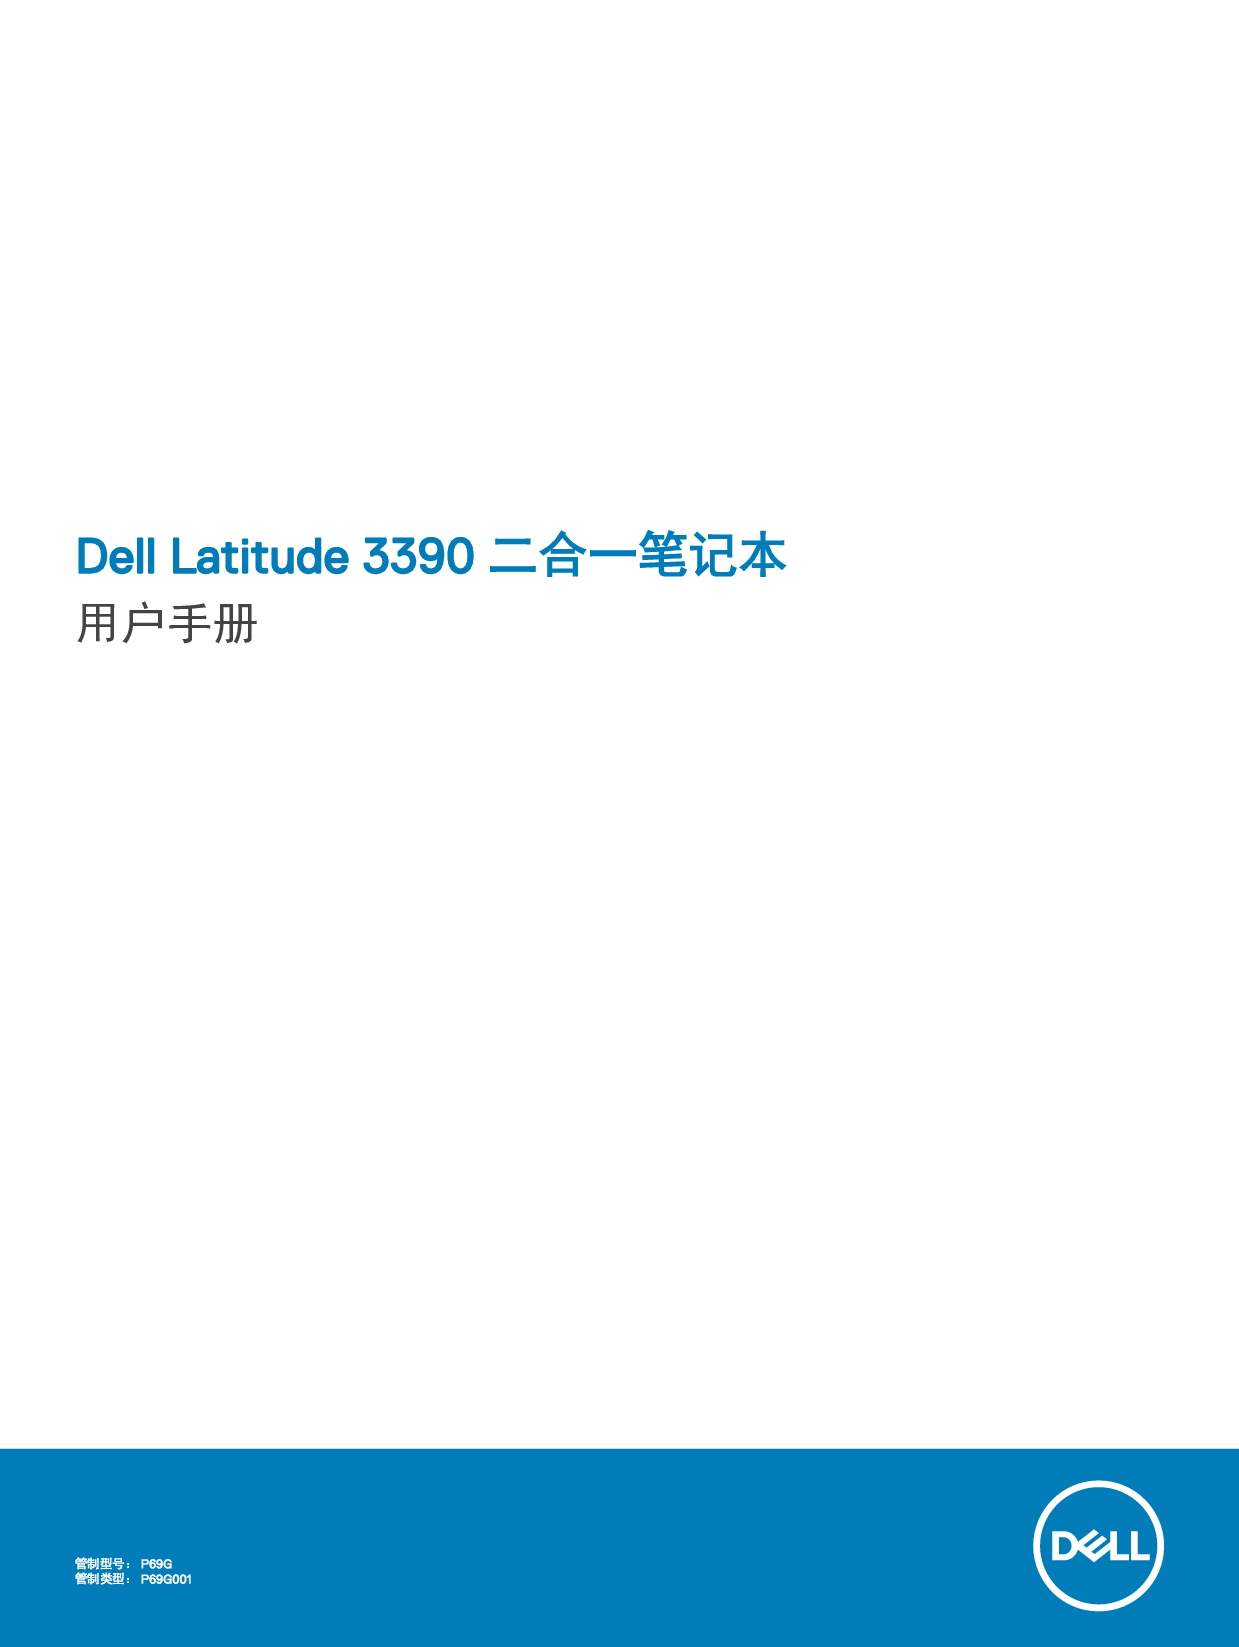 戴尔 Dell Latitude 3390 2-IN-1 用户手册 封面